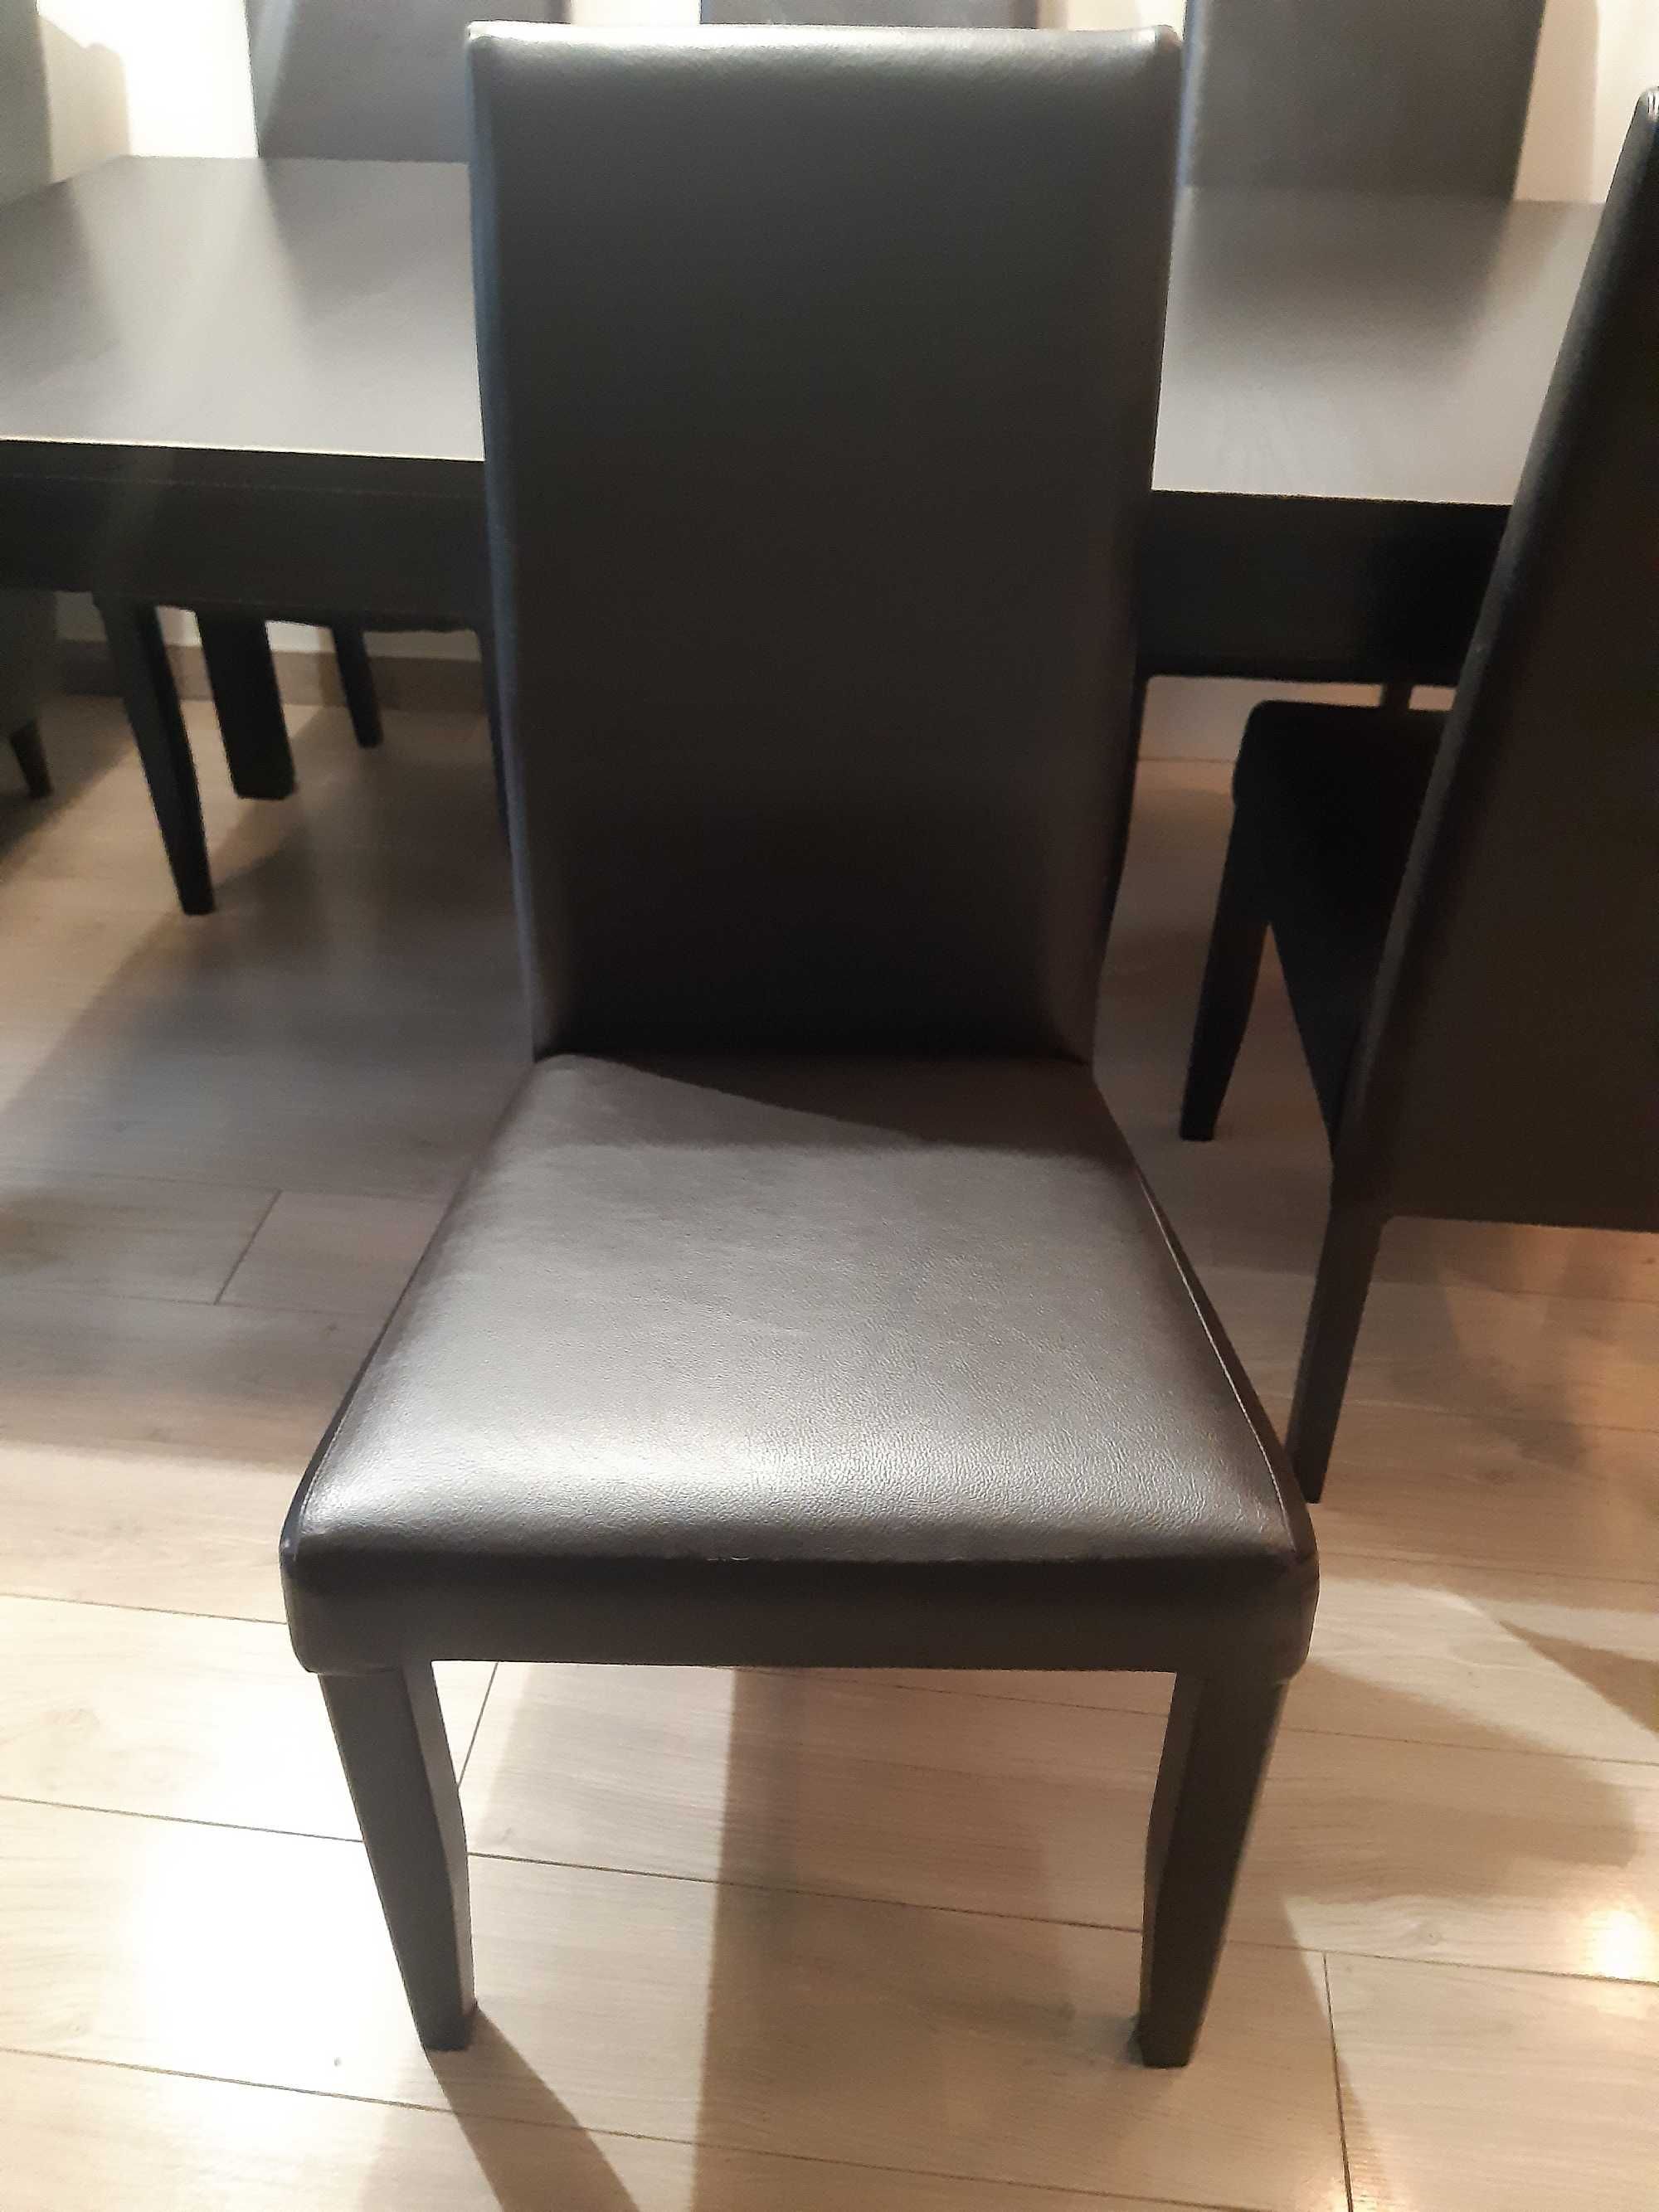 Stół rozkładany z 6 krzesłami